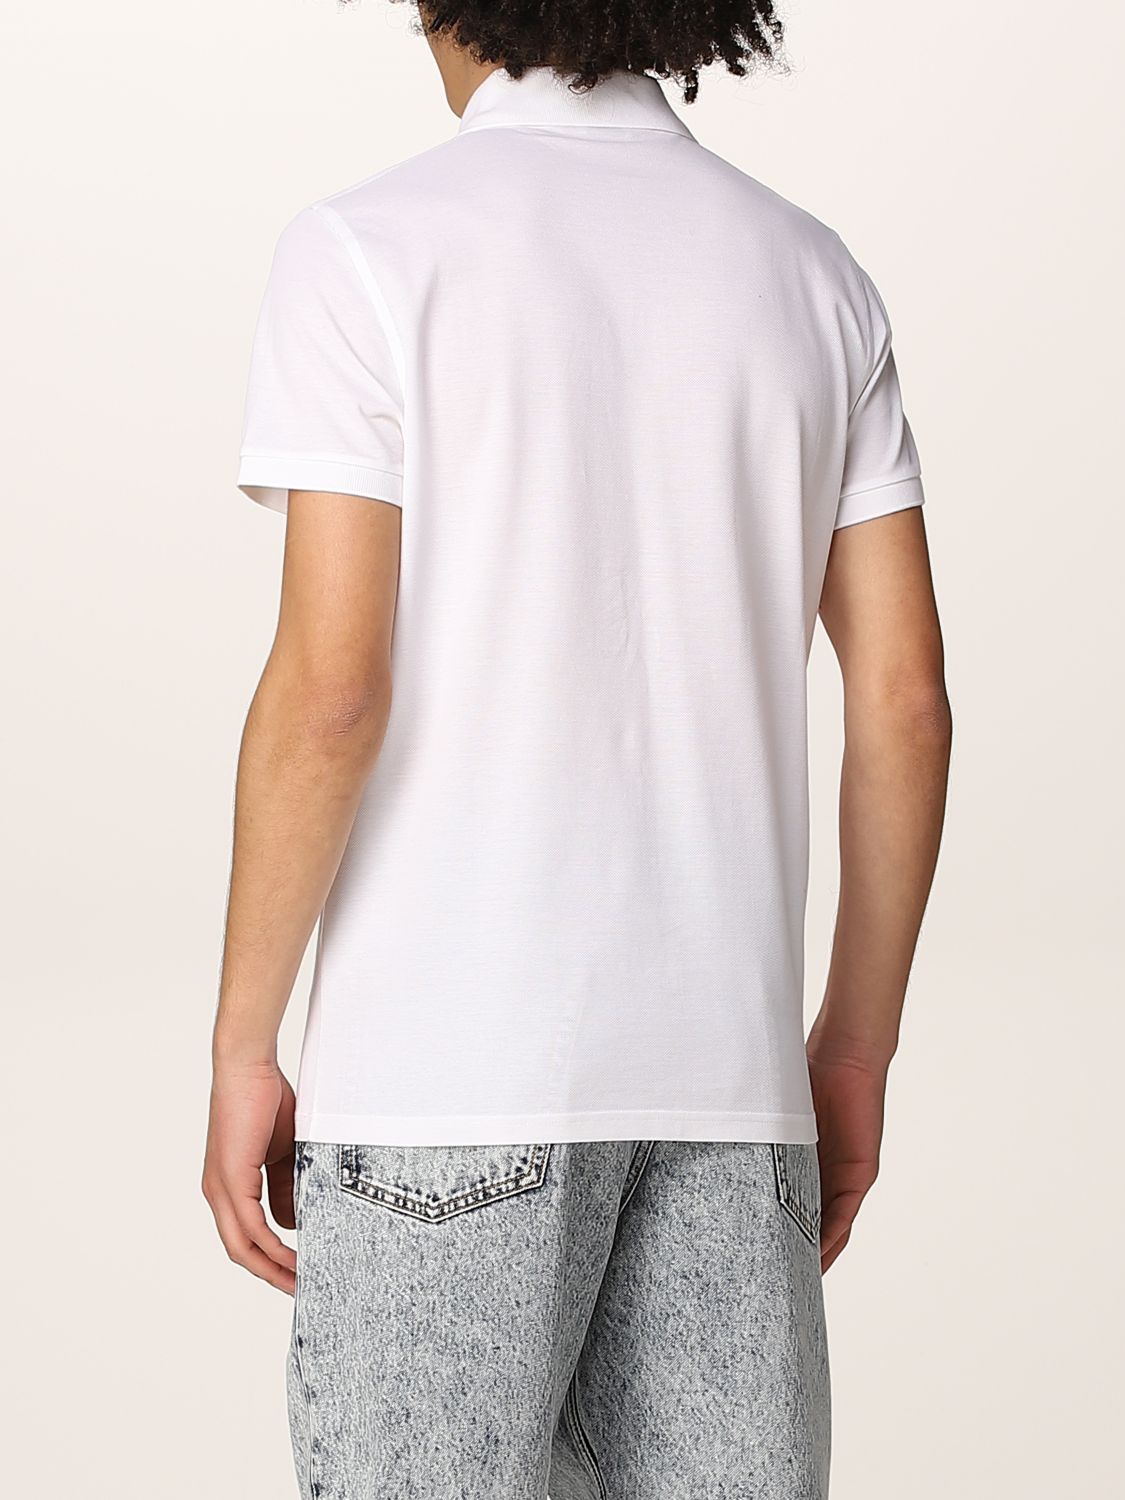 Polo shirt Saint Laurent: Saint Laurent piqué cotton basic polo t-shirt white 3